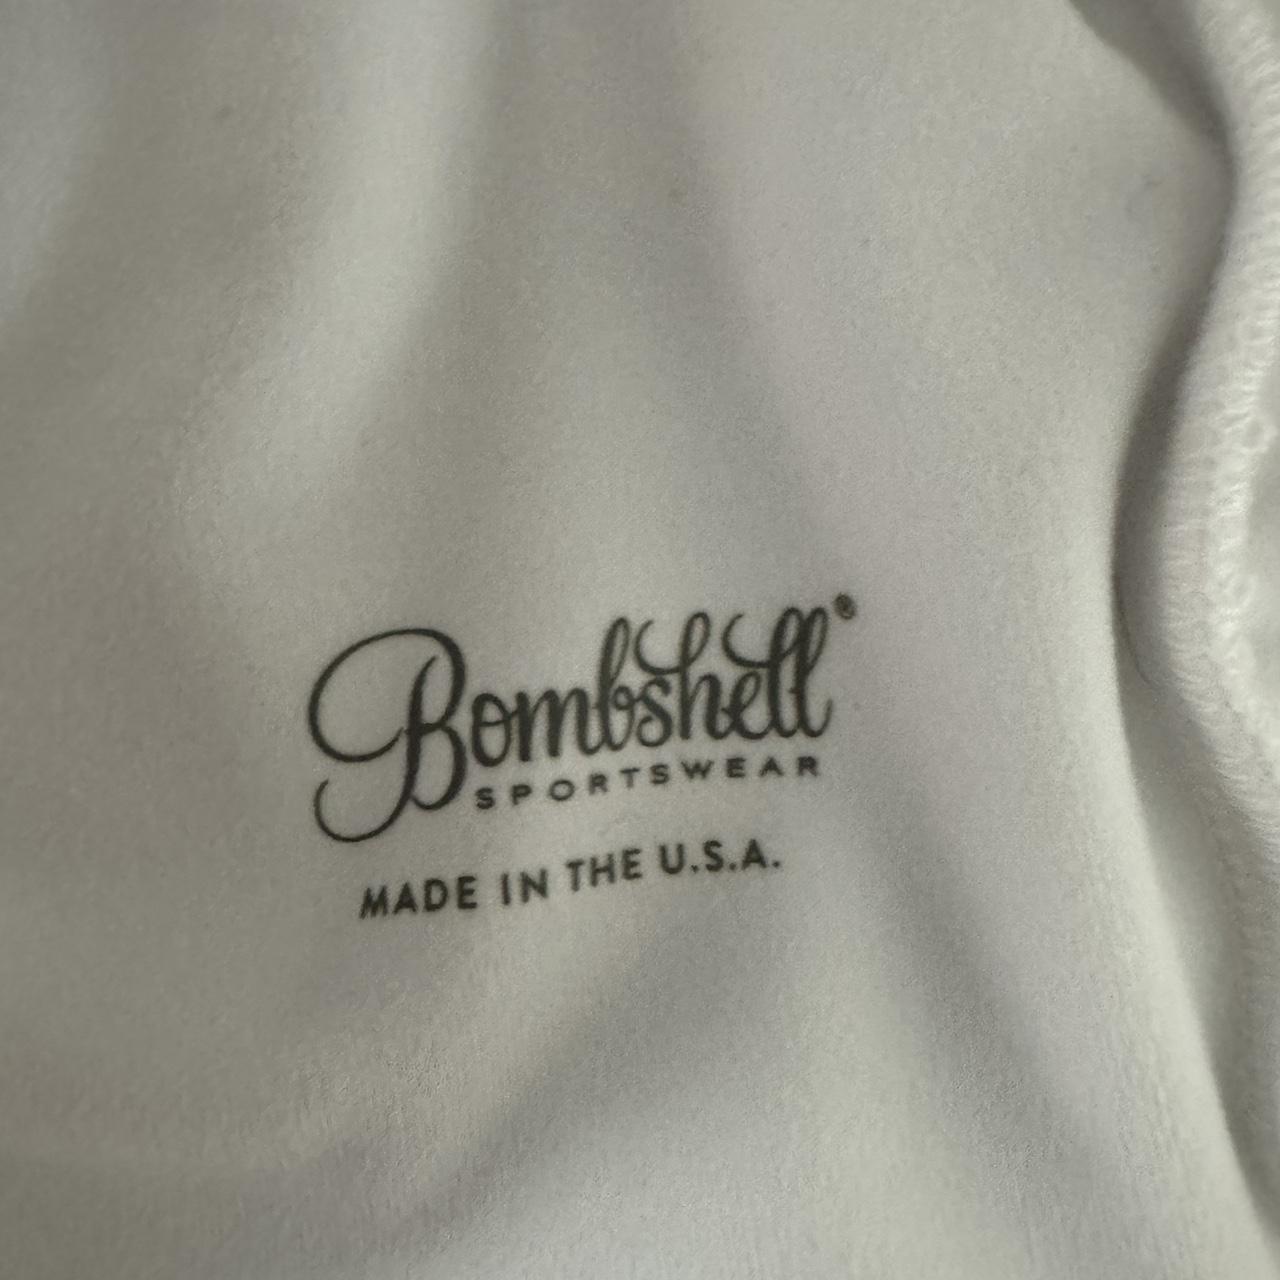 Bombshell Sportswear White Crop Top Size Small - Depop